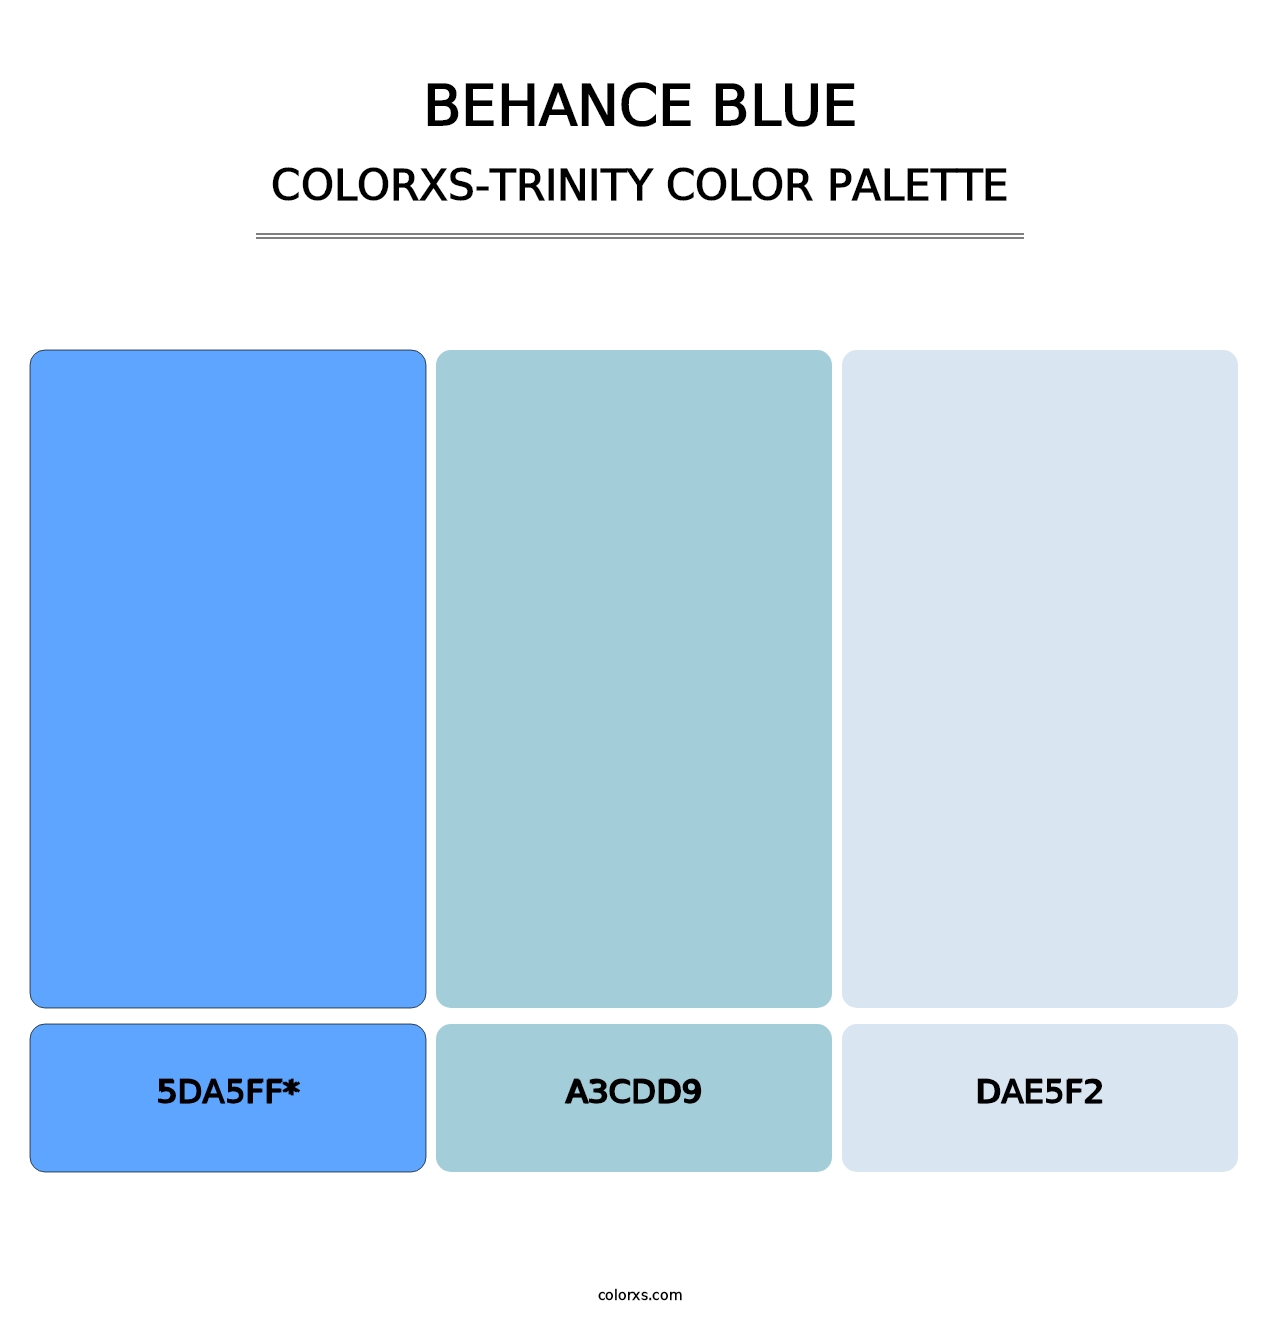 Behance Blue - Colorxs Trinity Palette